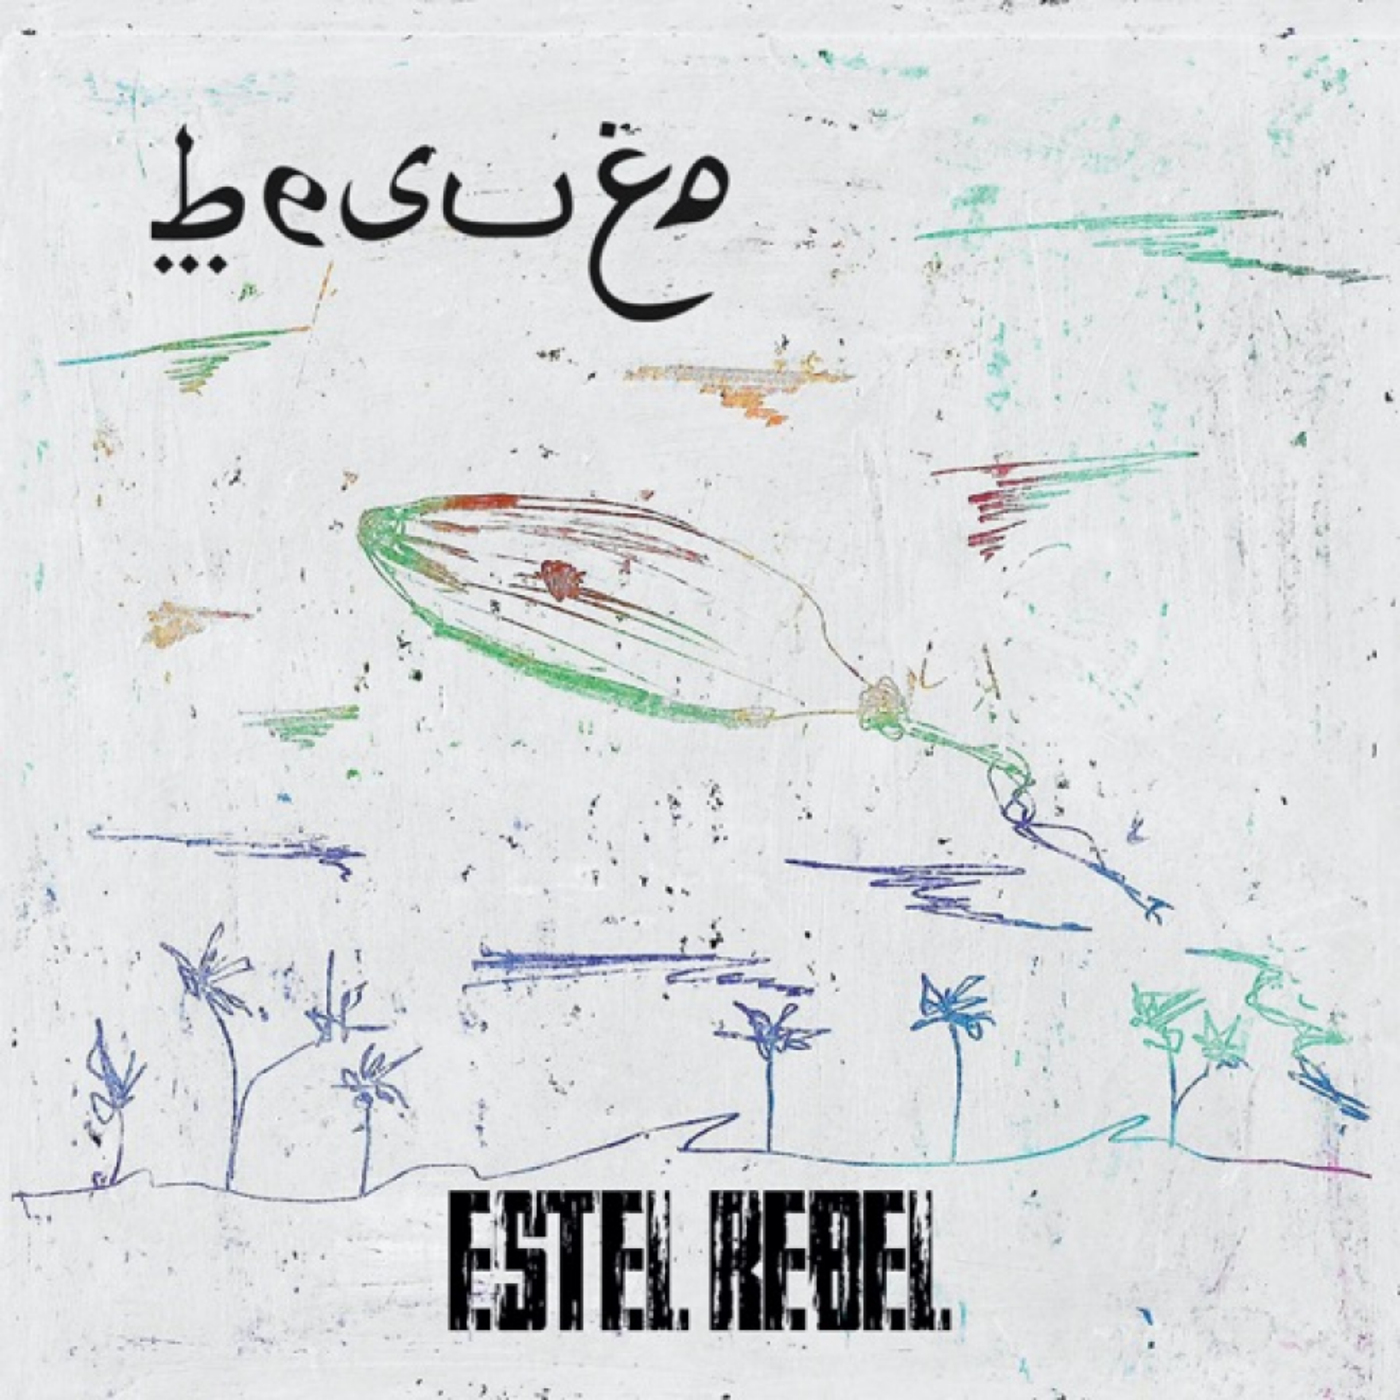 Besugo - Estel rebel | musica en valencià